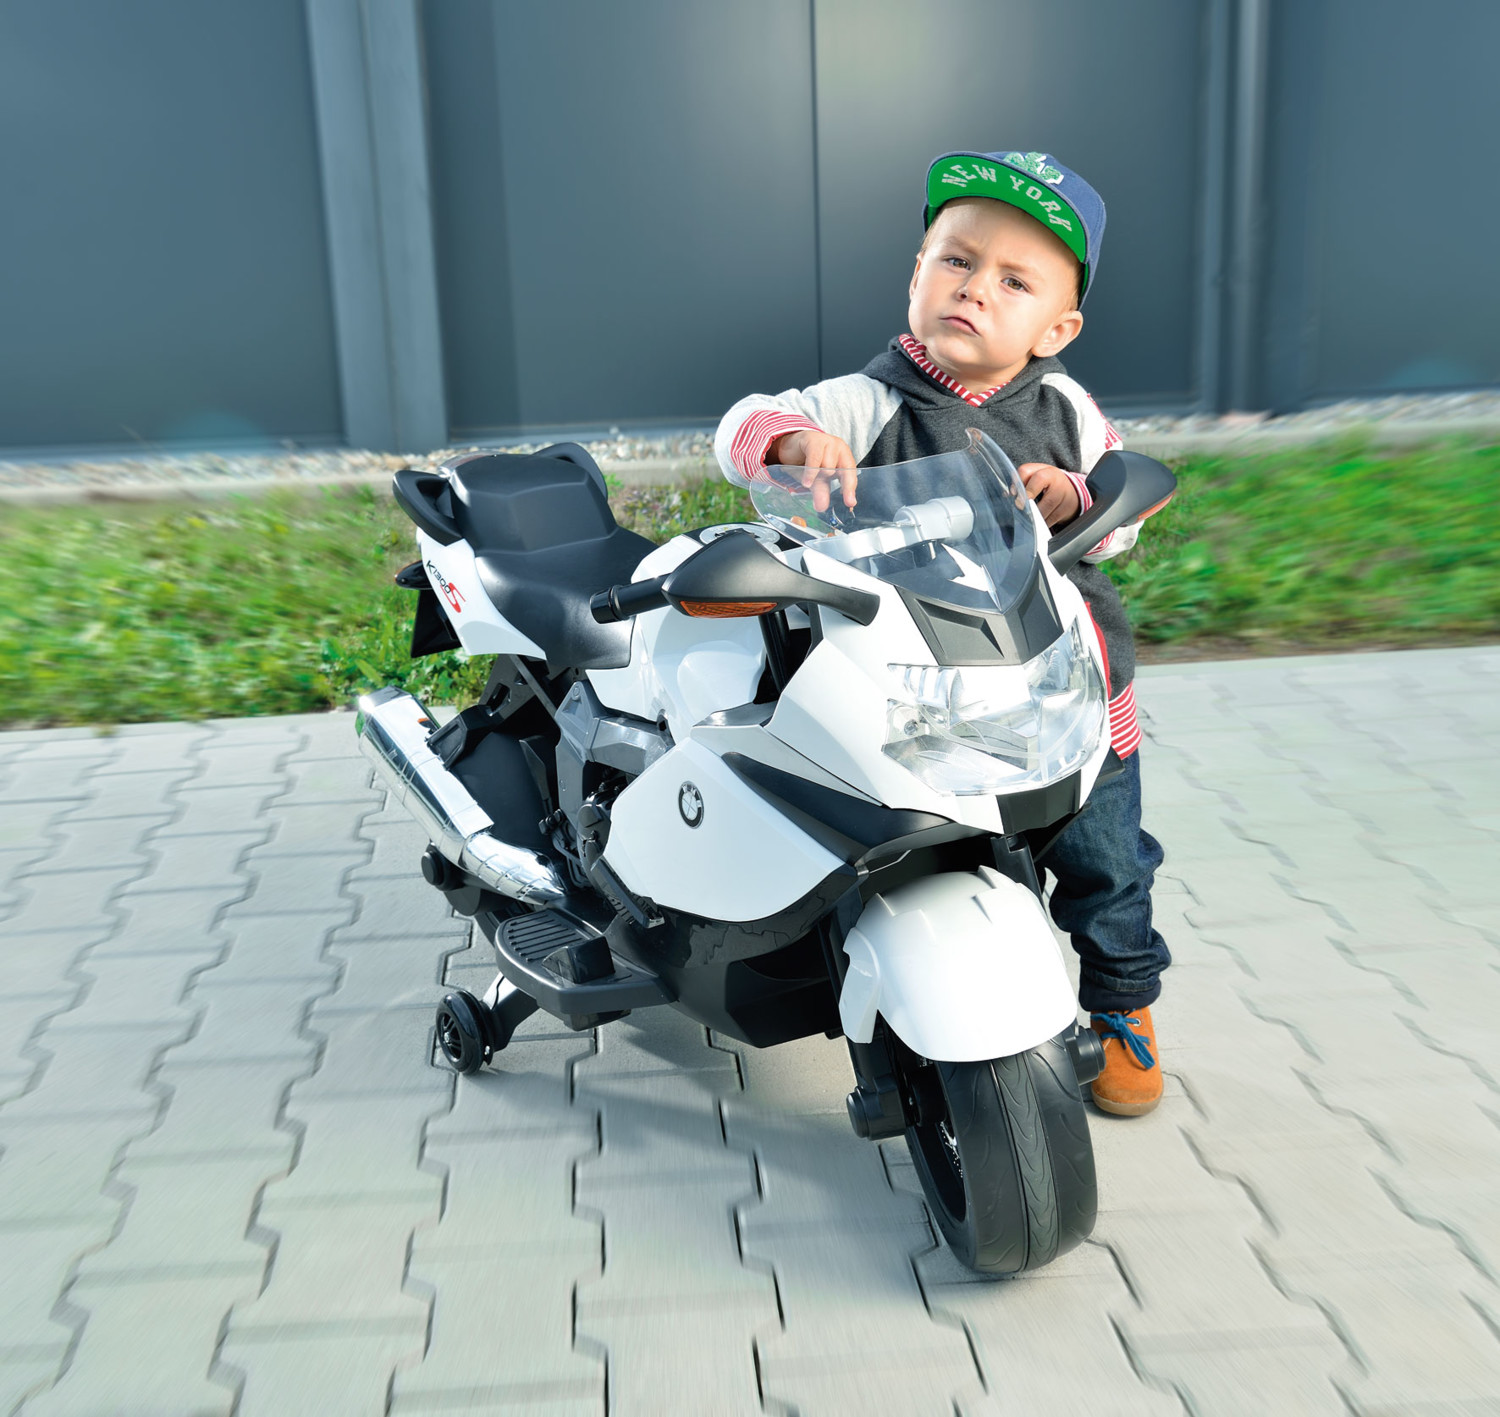 Moto Modèle Jouet Pour Enfants Bébé Enfants Enfants Jouets Cadeaux